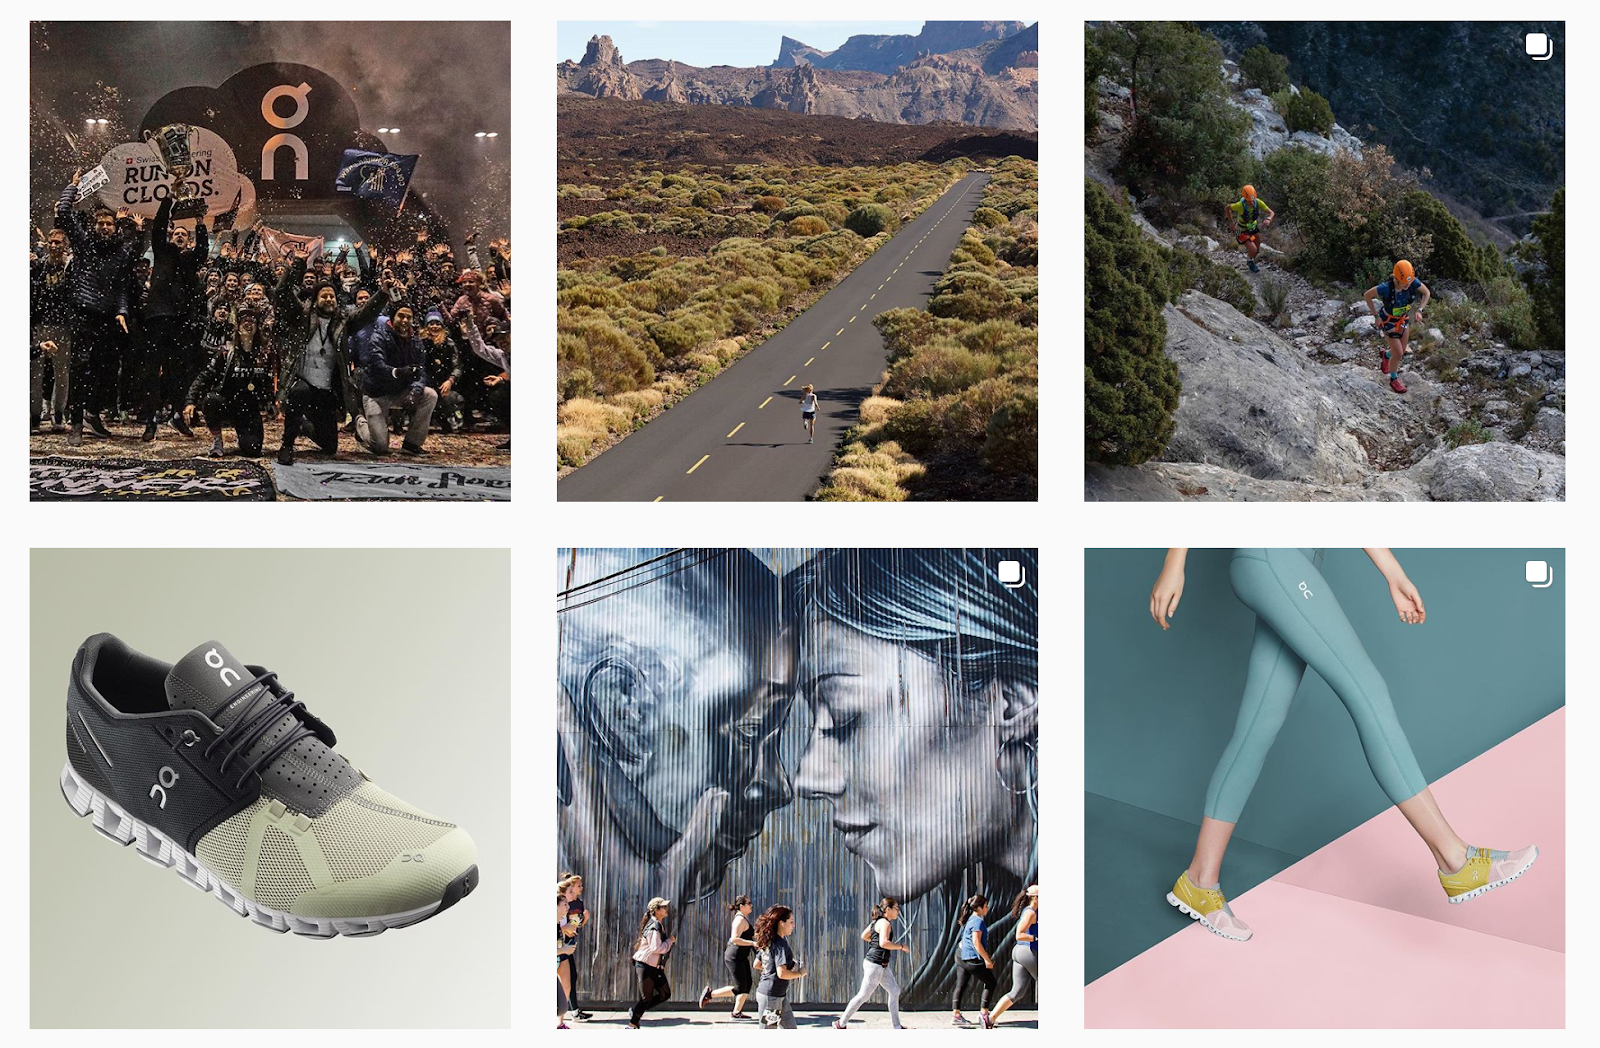 brand storytelling on running instagram